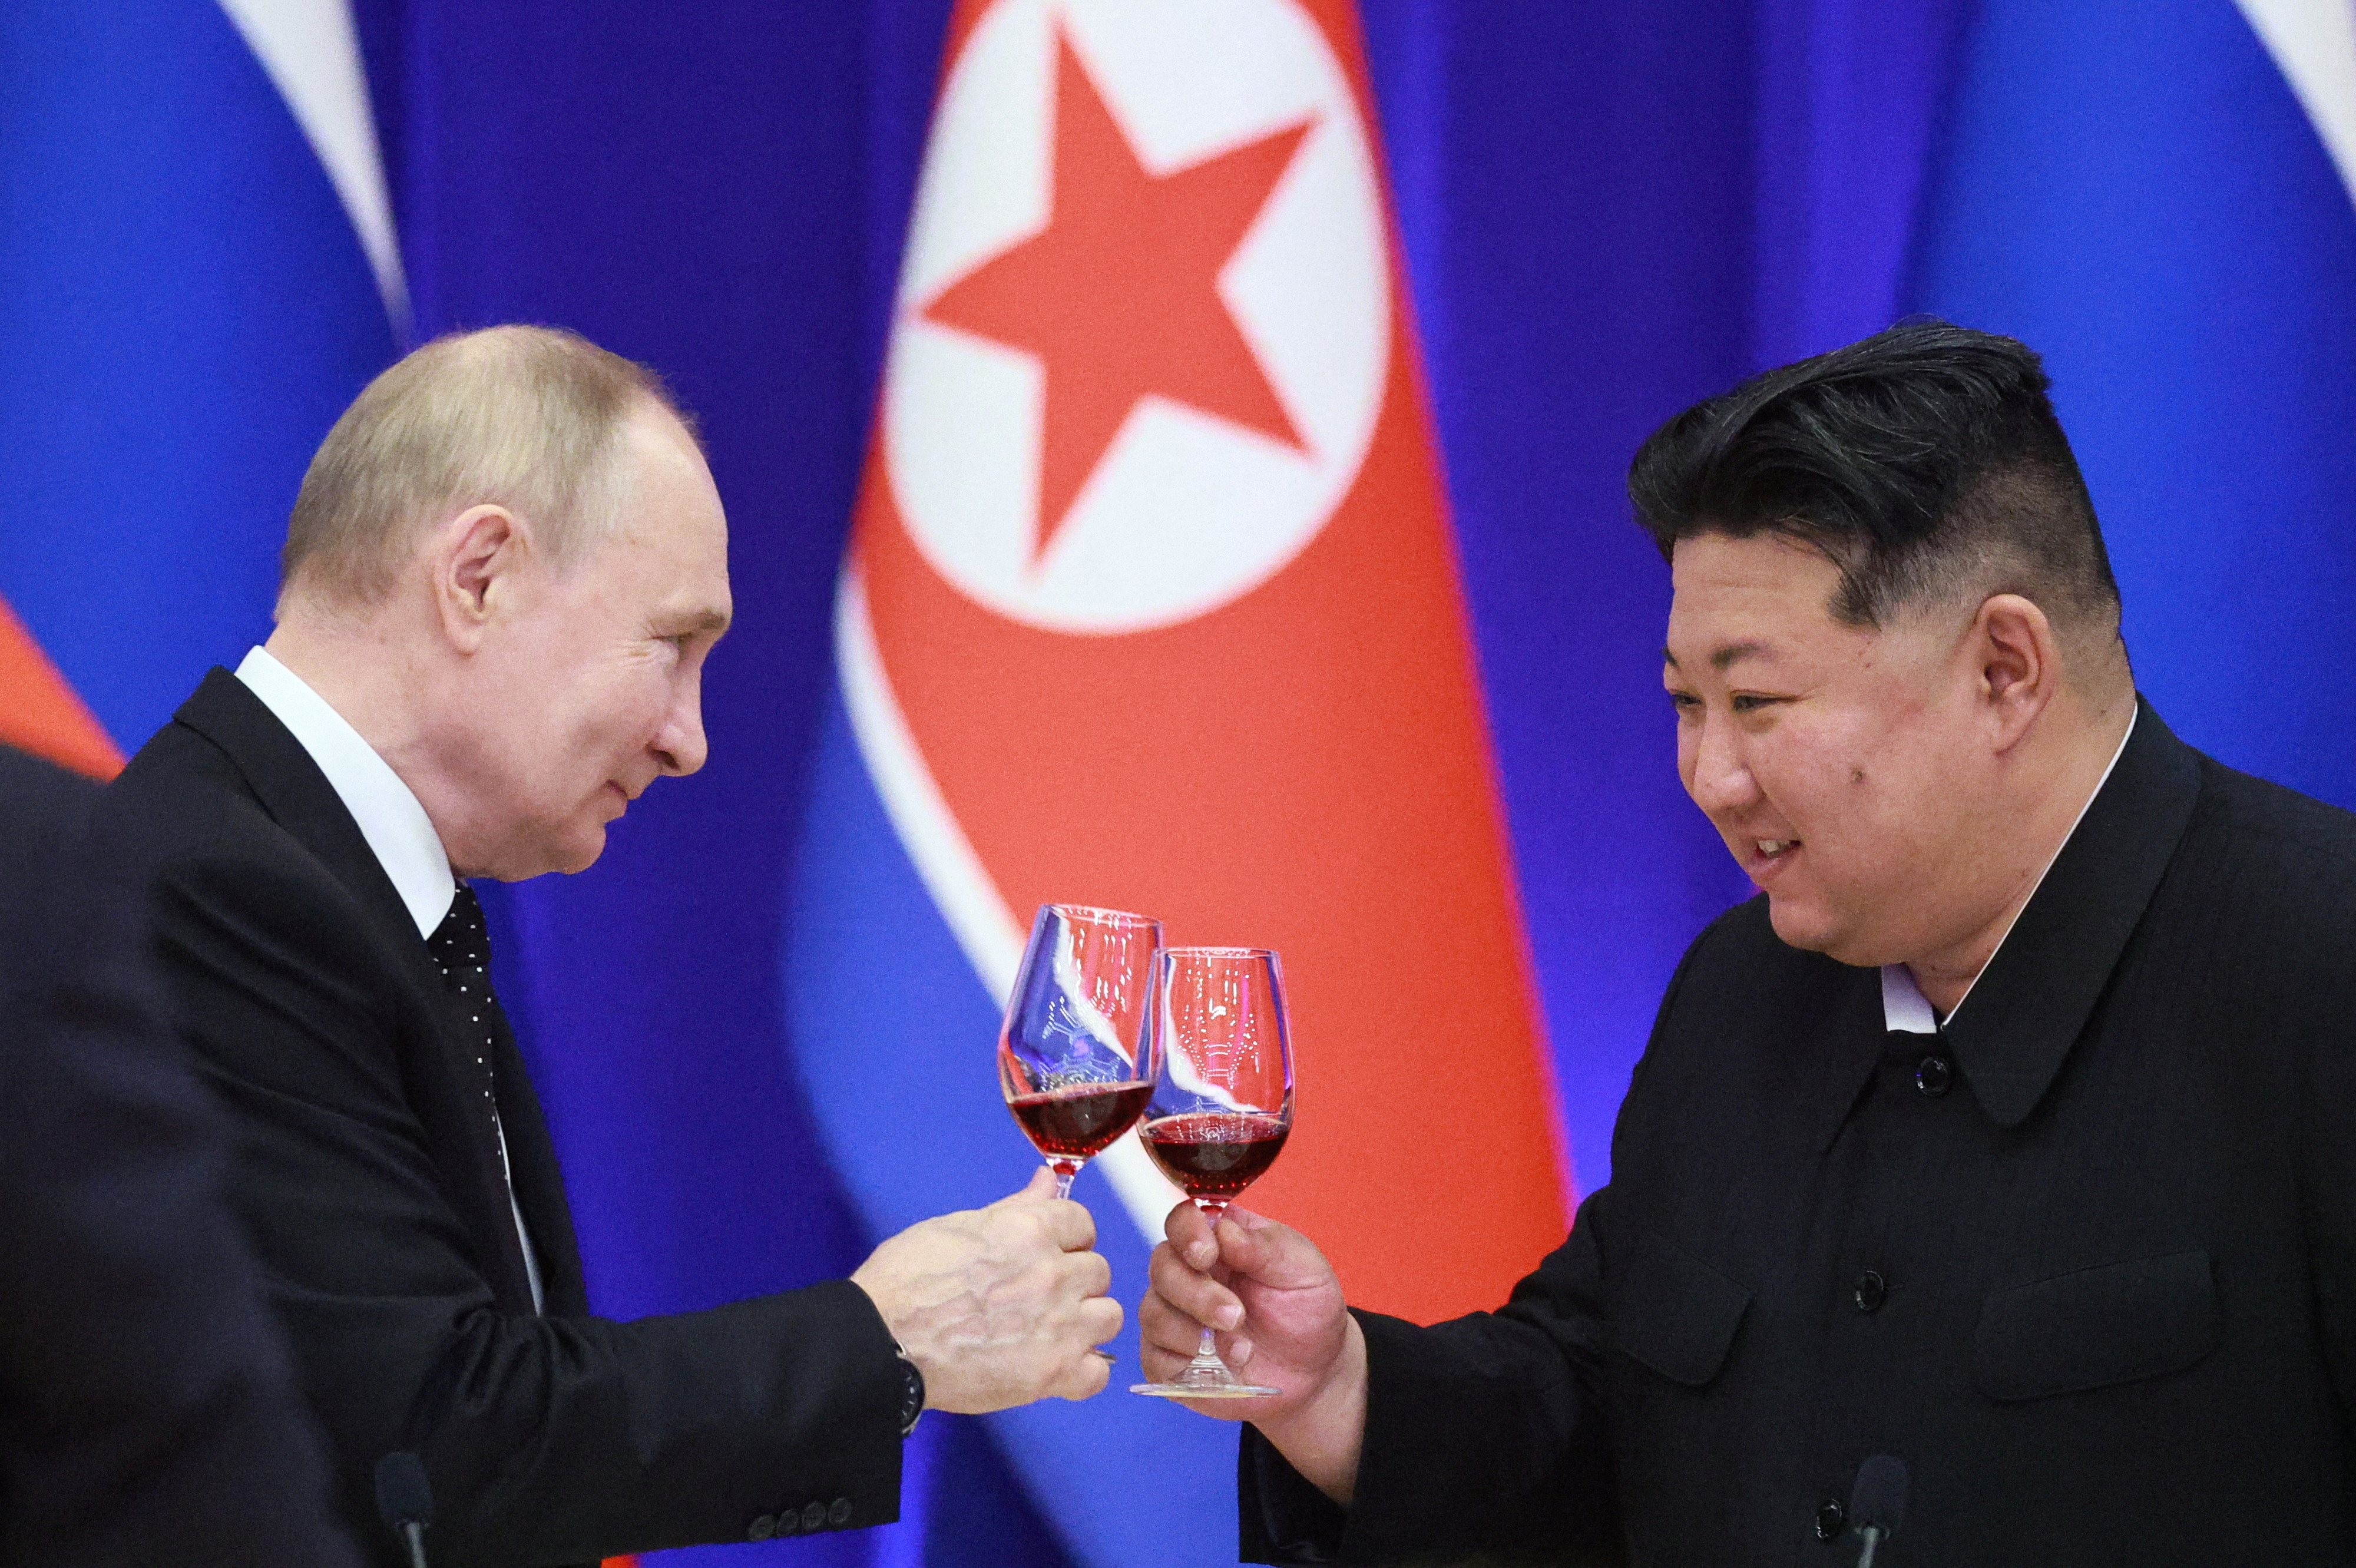 북한을 국빈 방문한 블라디미르 푸틴 러시아 대통령(왼쪽)과 김정은 북한 국무위원장이 지난 19일 평양에서 열린 국빈 만찬 행사에서 건배하고 있다.  평양 로이터 연합뉴스